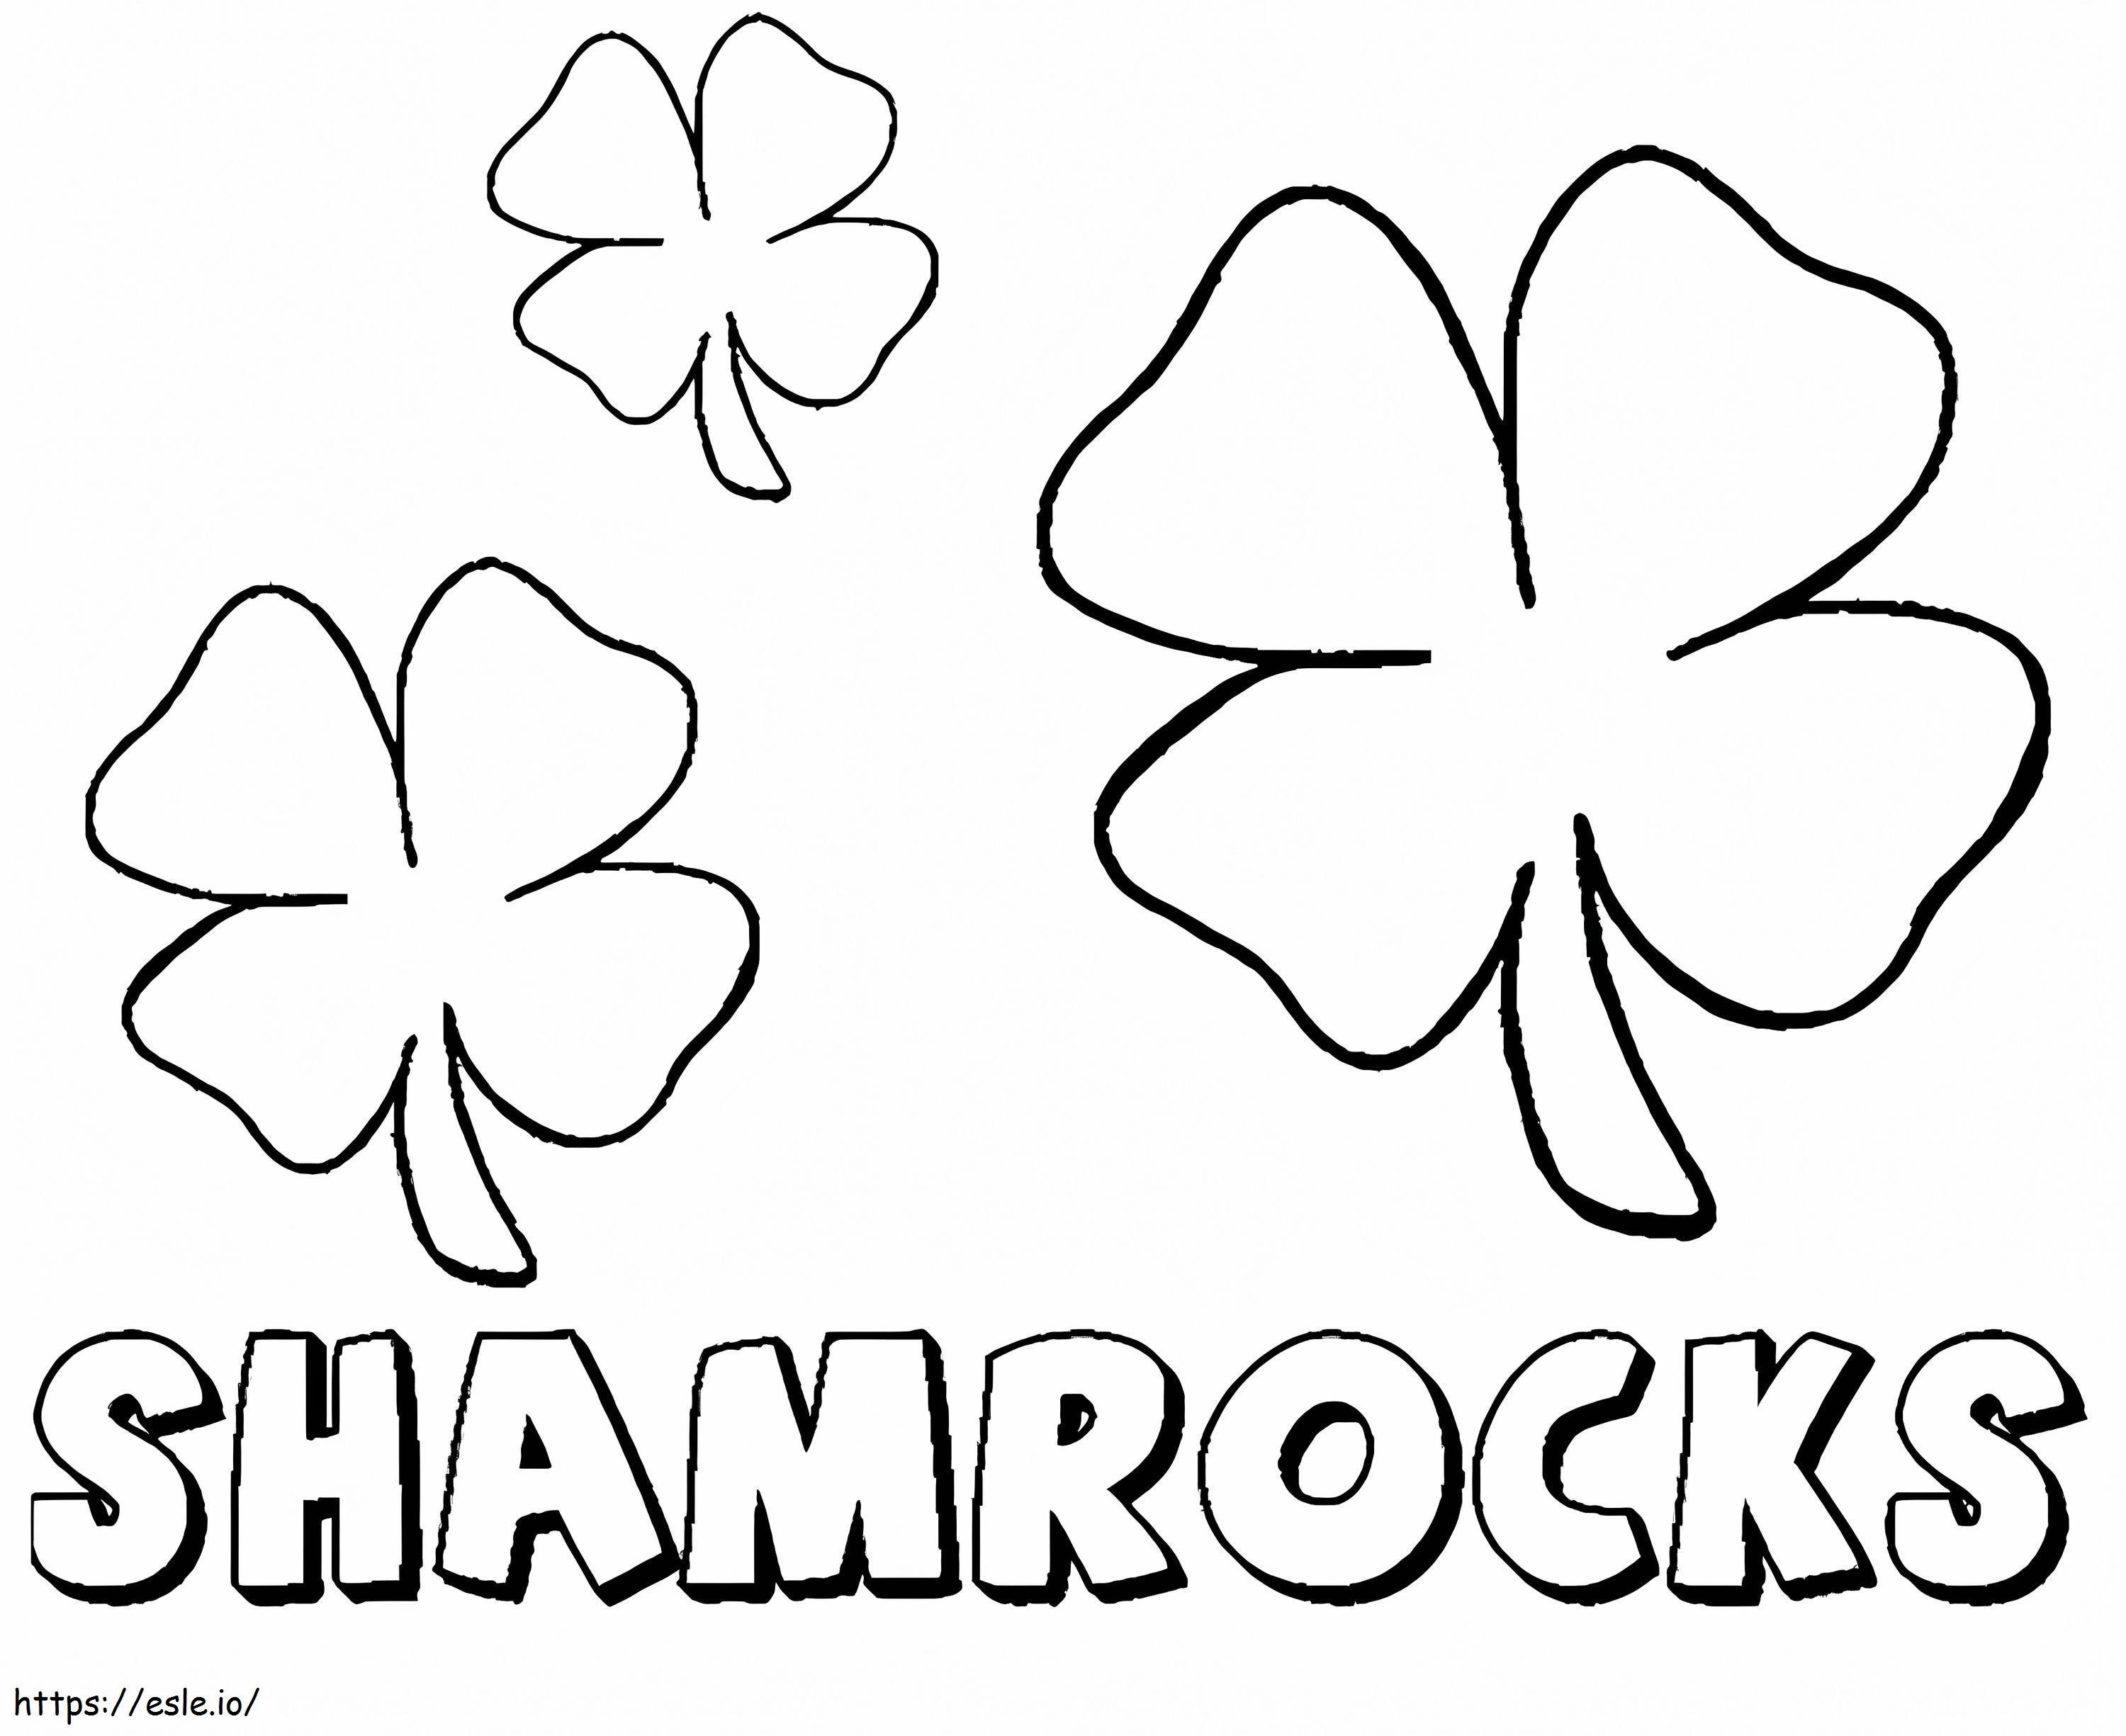 Free Shamrocks coloring page